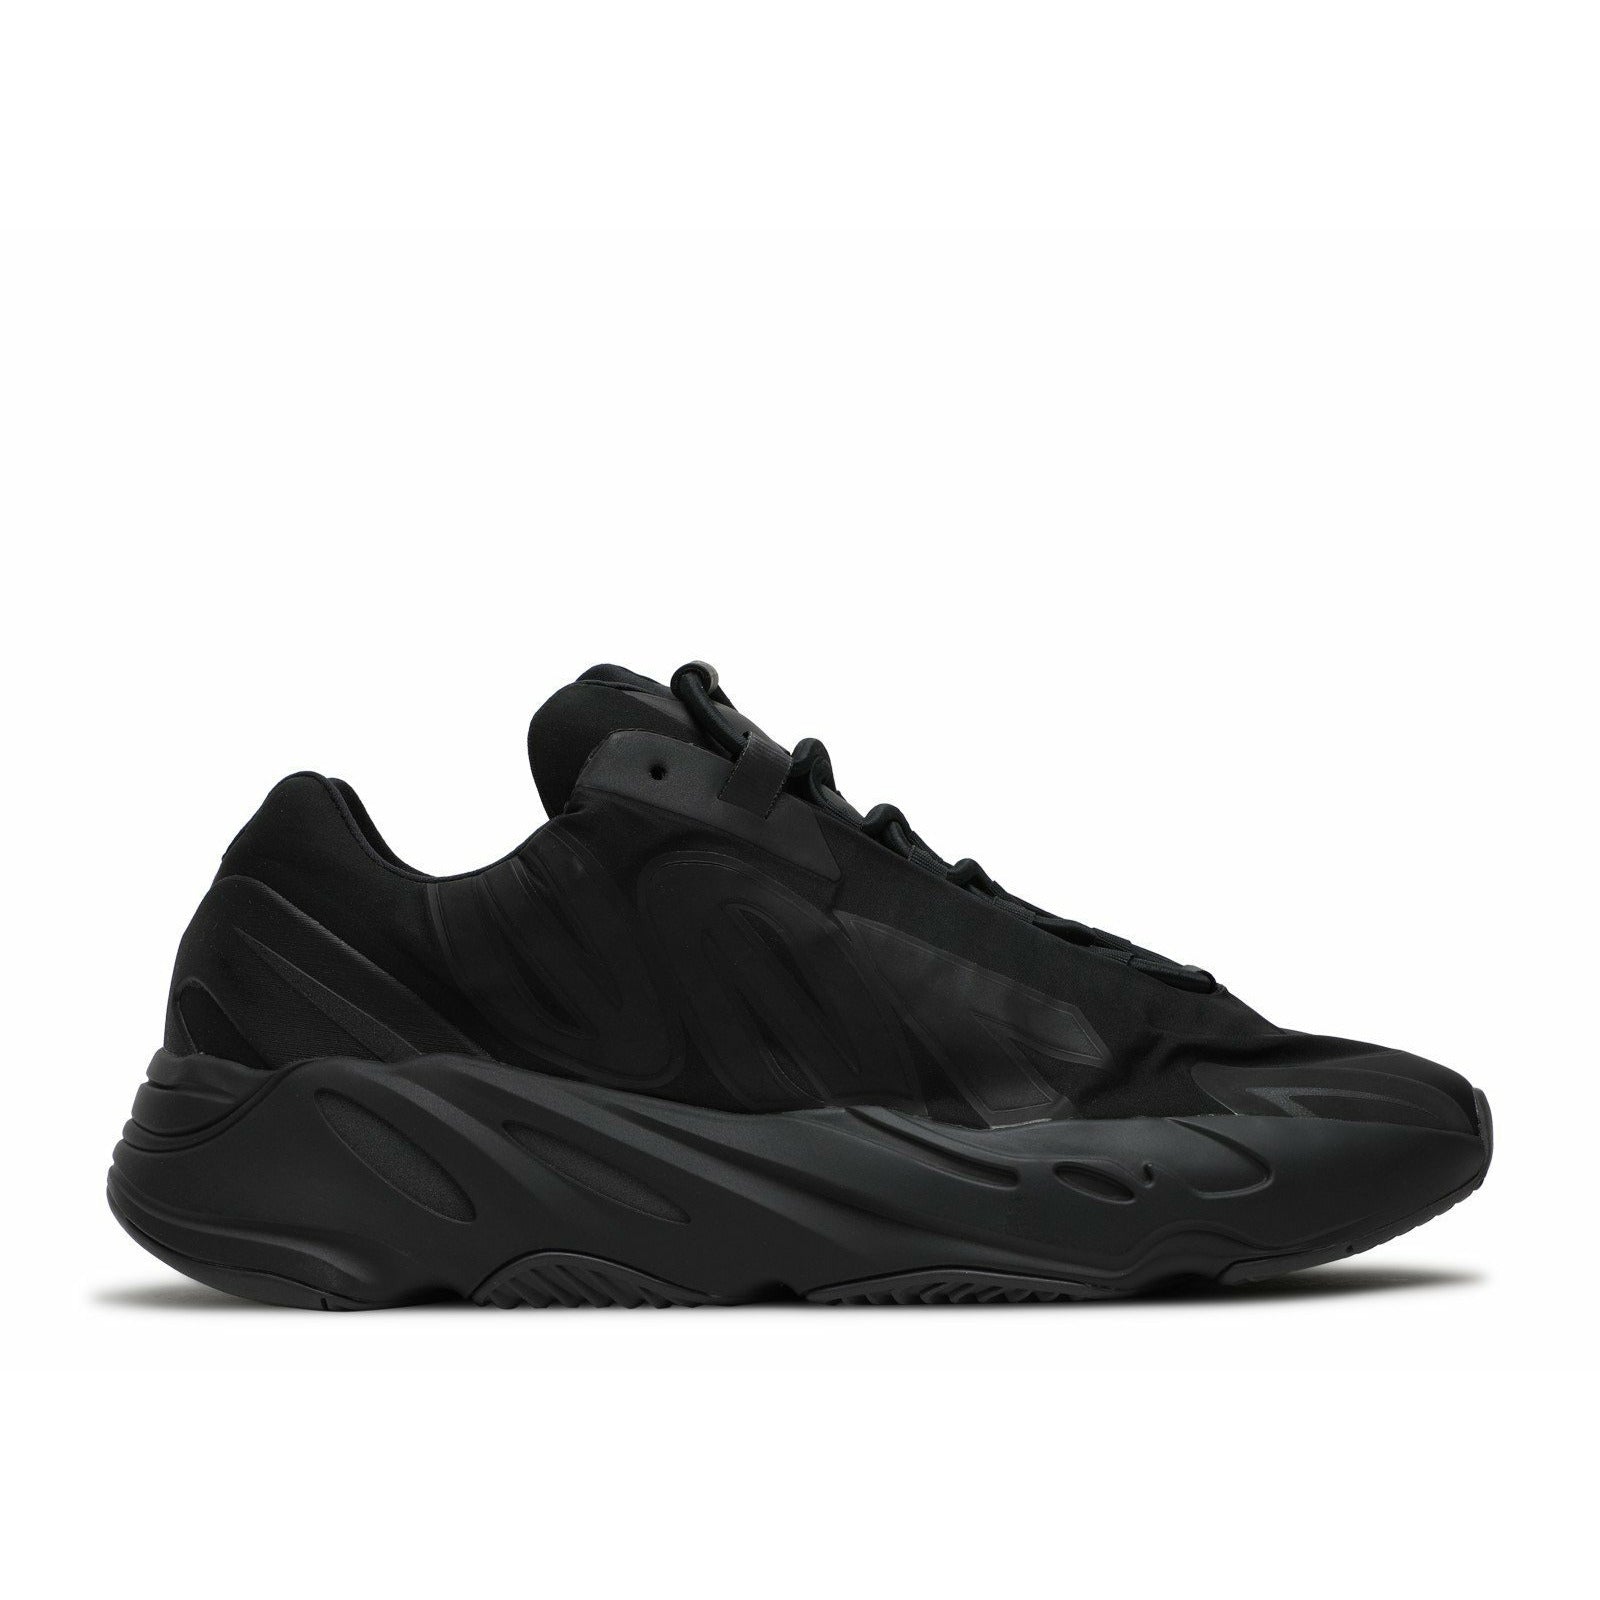 Adidas-Yeezy Boost 700 MNVN "Triple Black"-mrsneaker